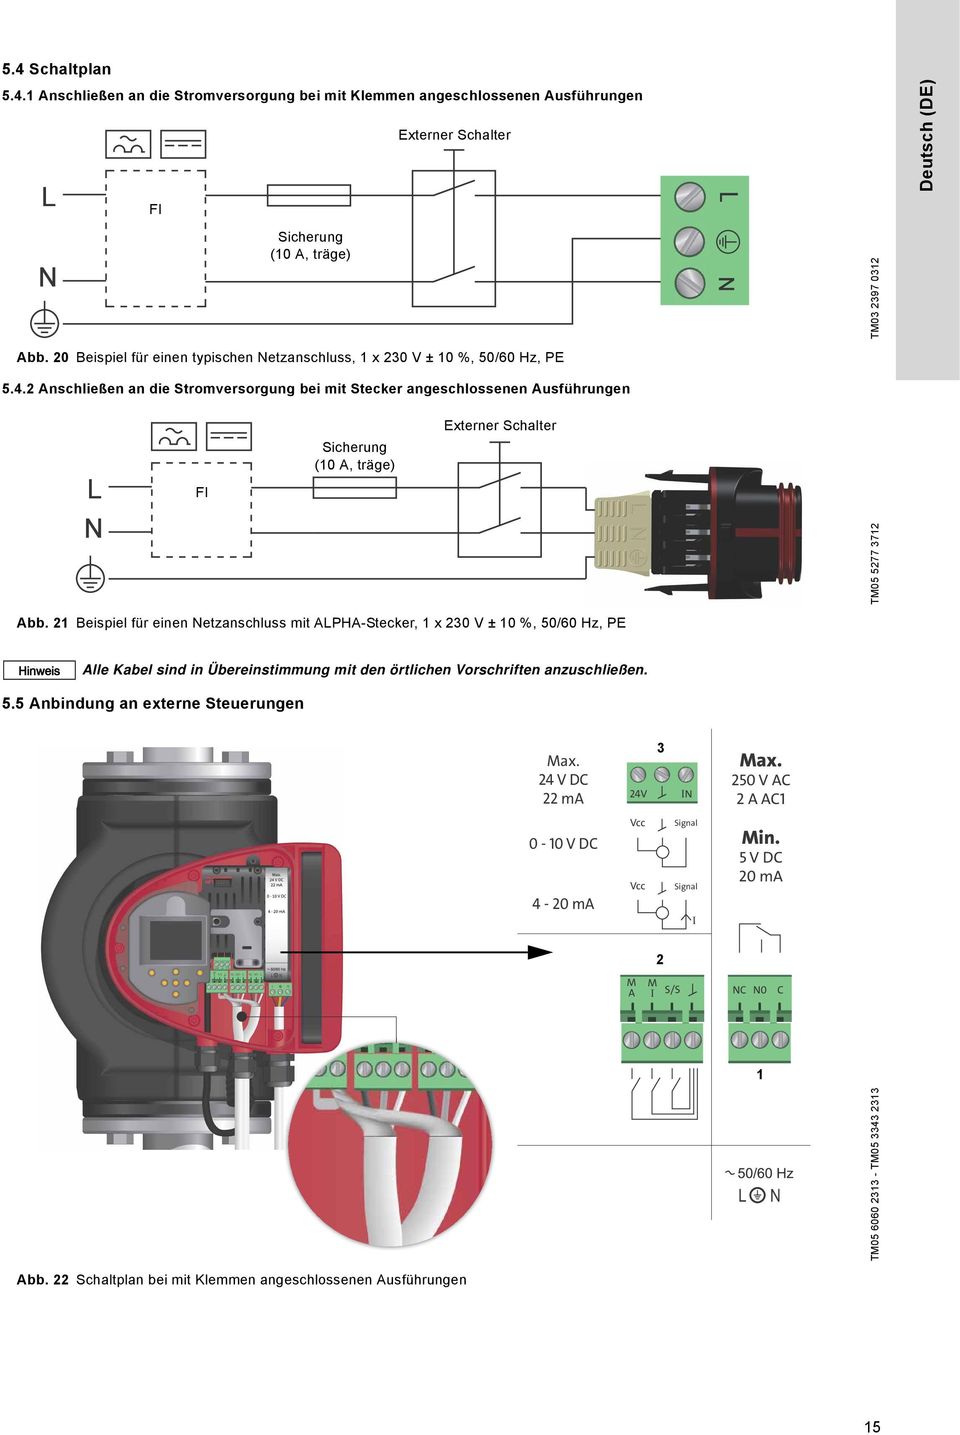 2 Anschließen an die Stromversorgung bei mit Stecker angeschlossenen Ausführungen FI Sicherung (10 A, träge) Externer Schalter TM05 5277 3712 Abb.